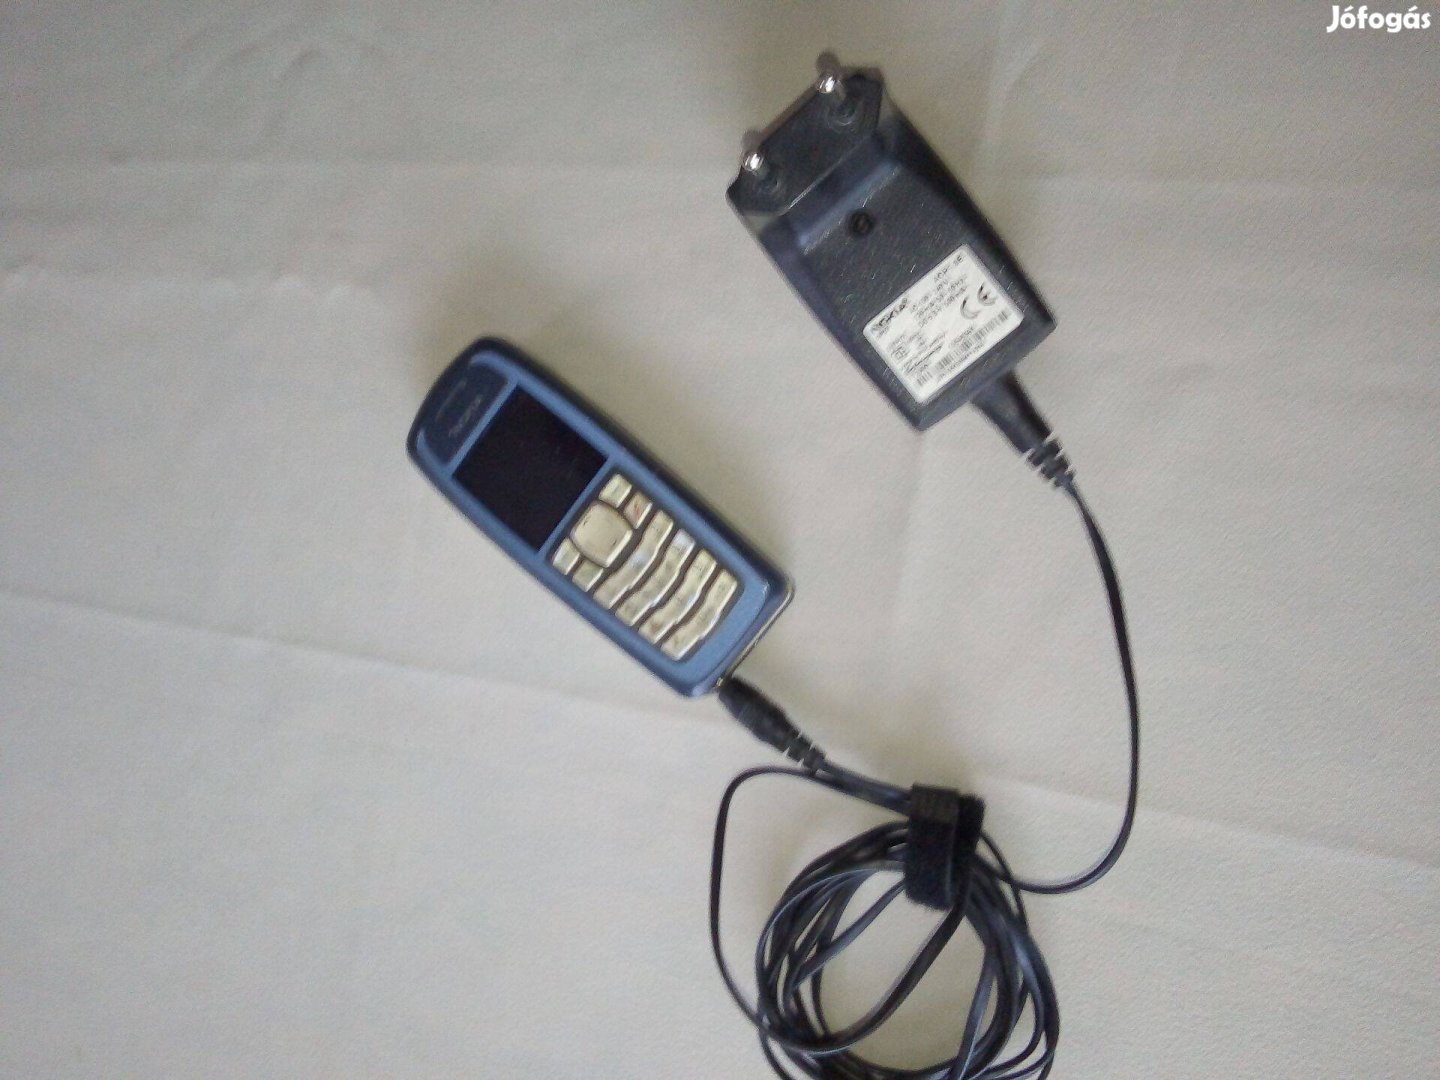 Retró Nokia 3100 mobiltelefon töltővel, dobozával. Gyűjteménynek